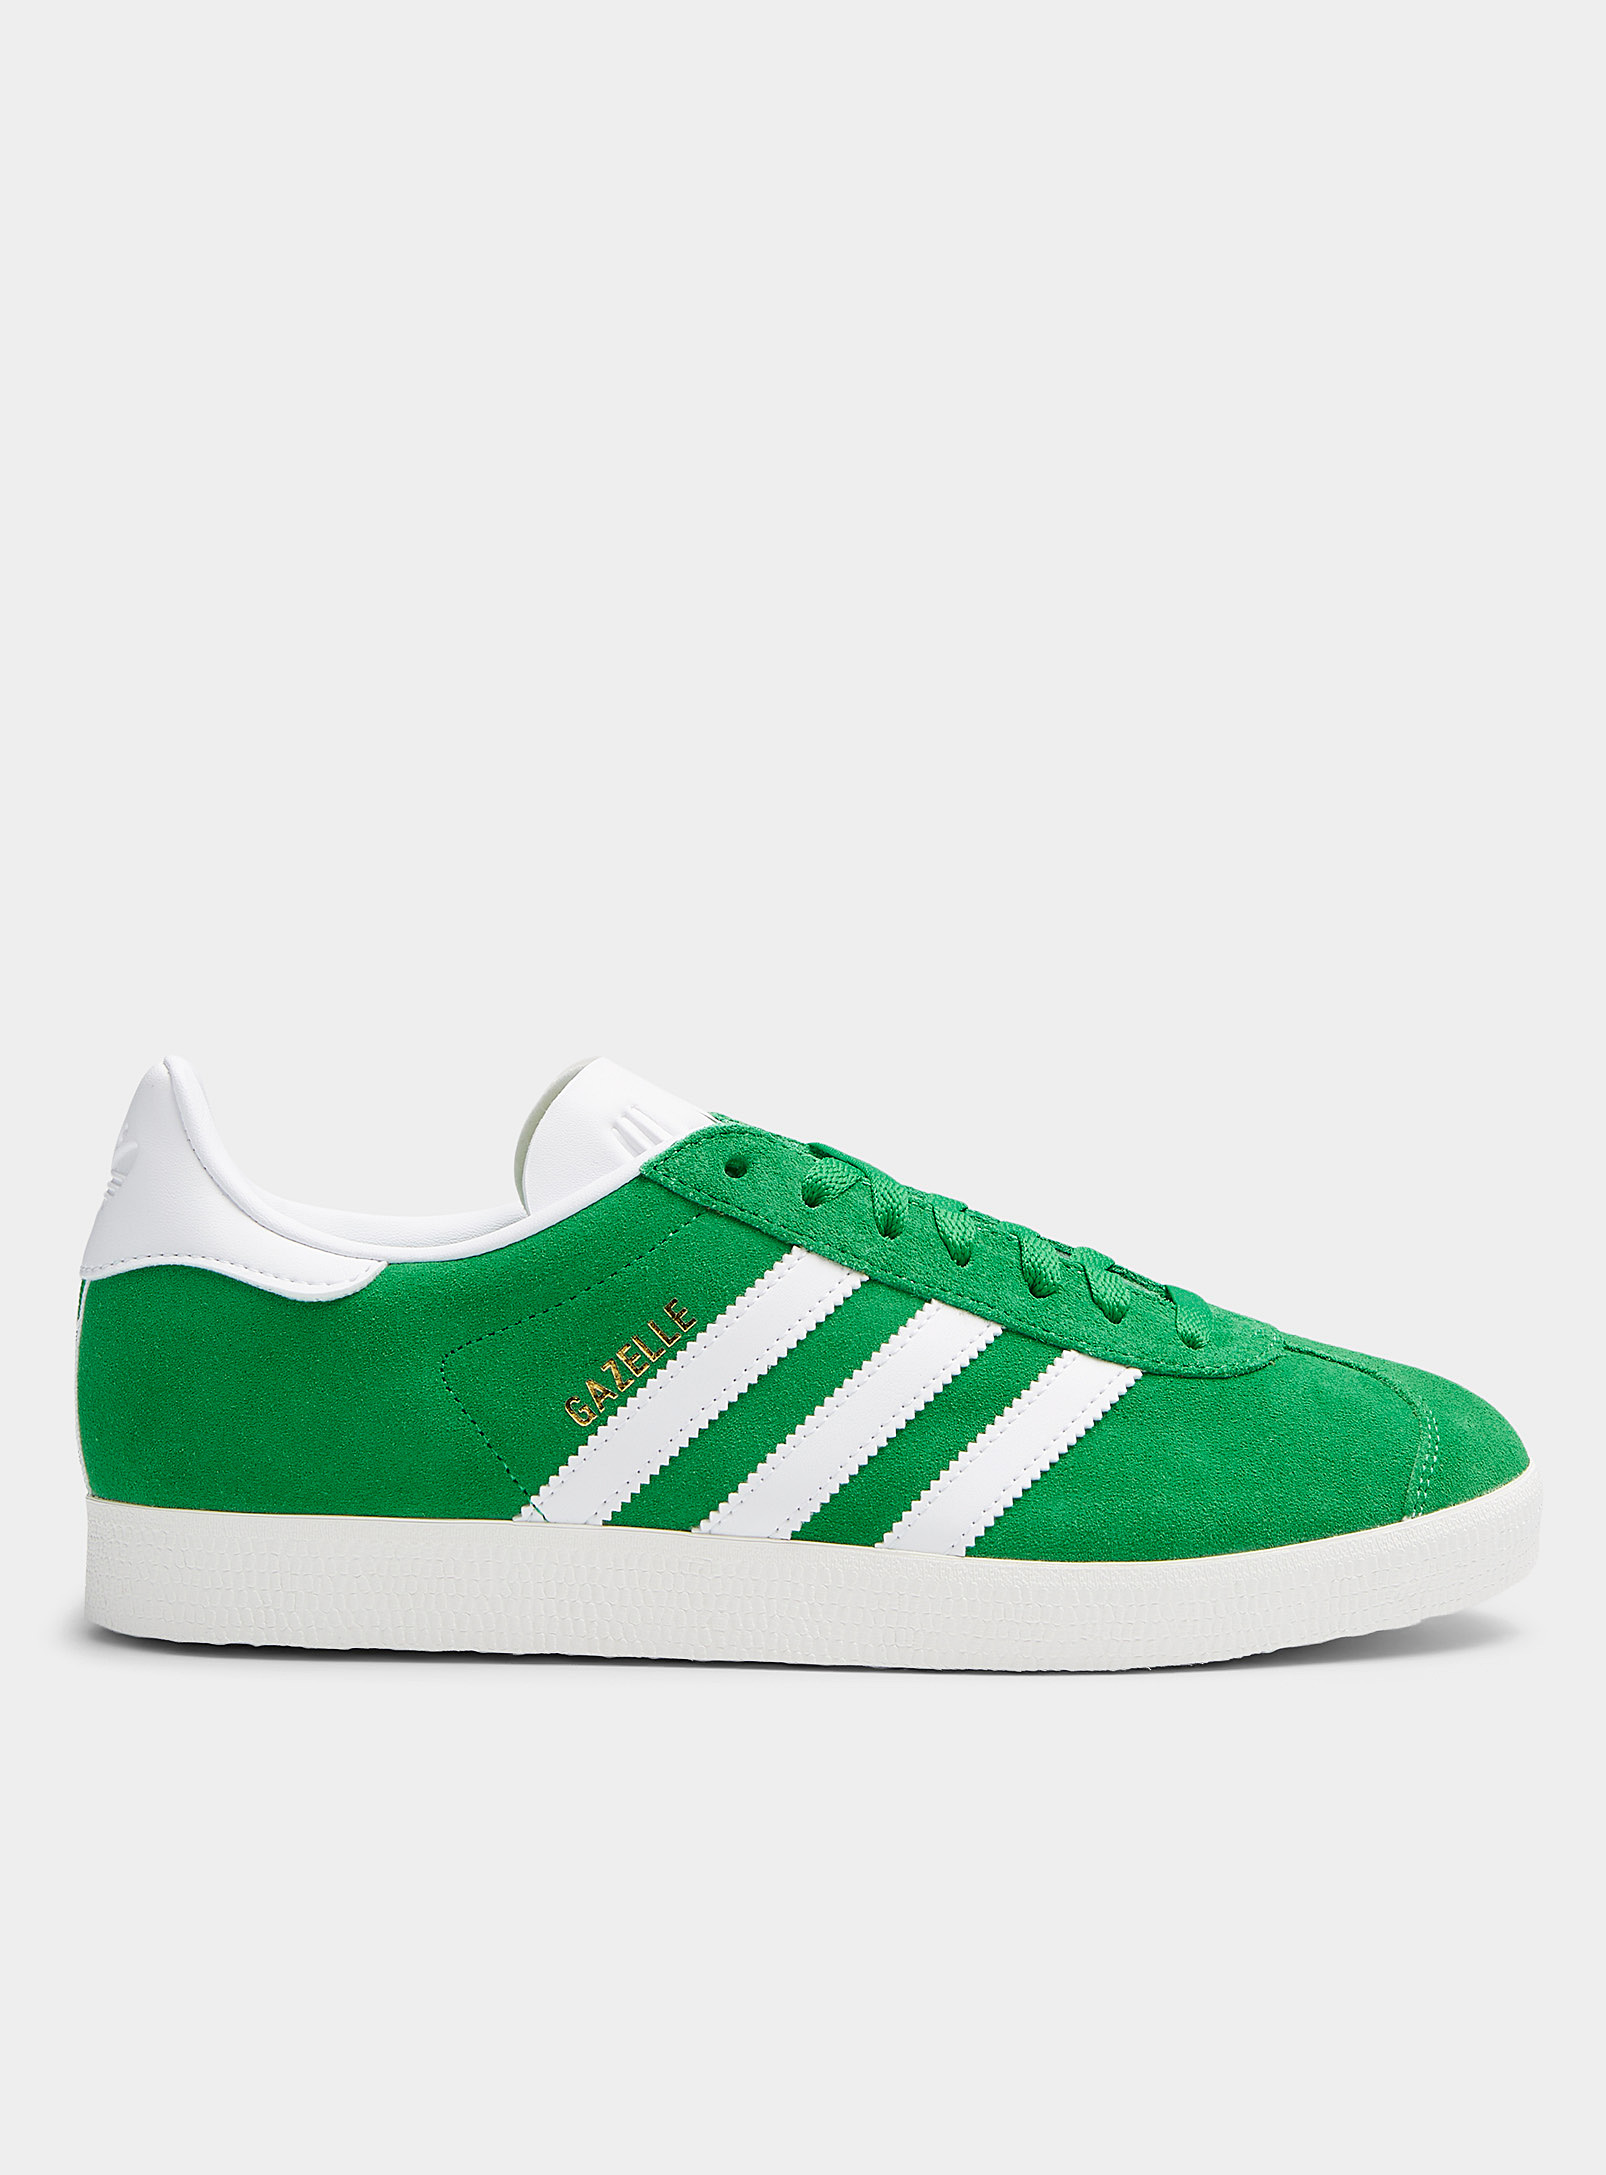 Shop Adidas Originals Preloved Green Suede Gazelle Sneakers Men